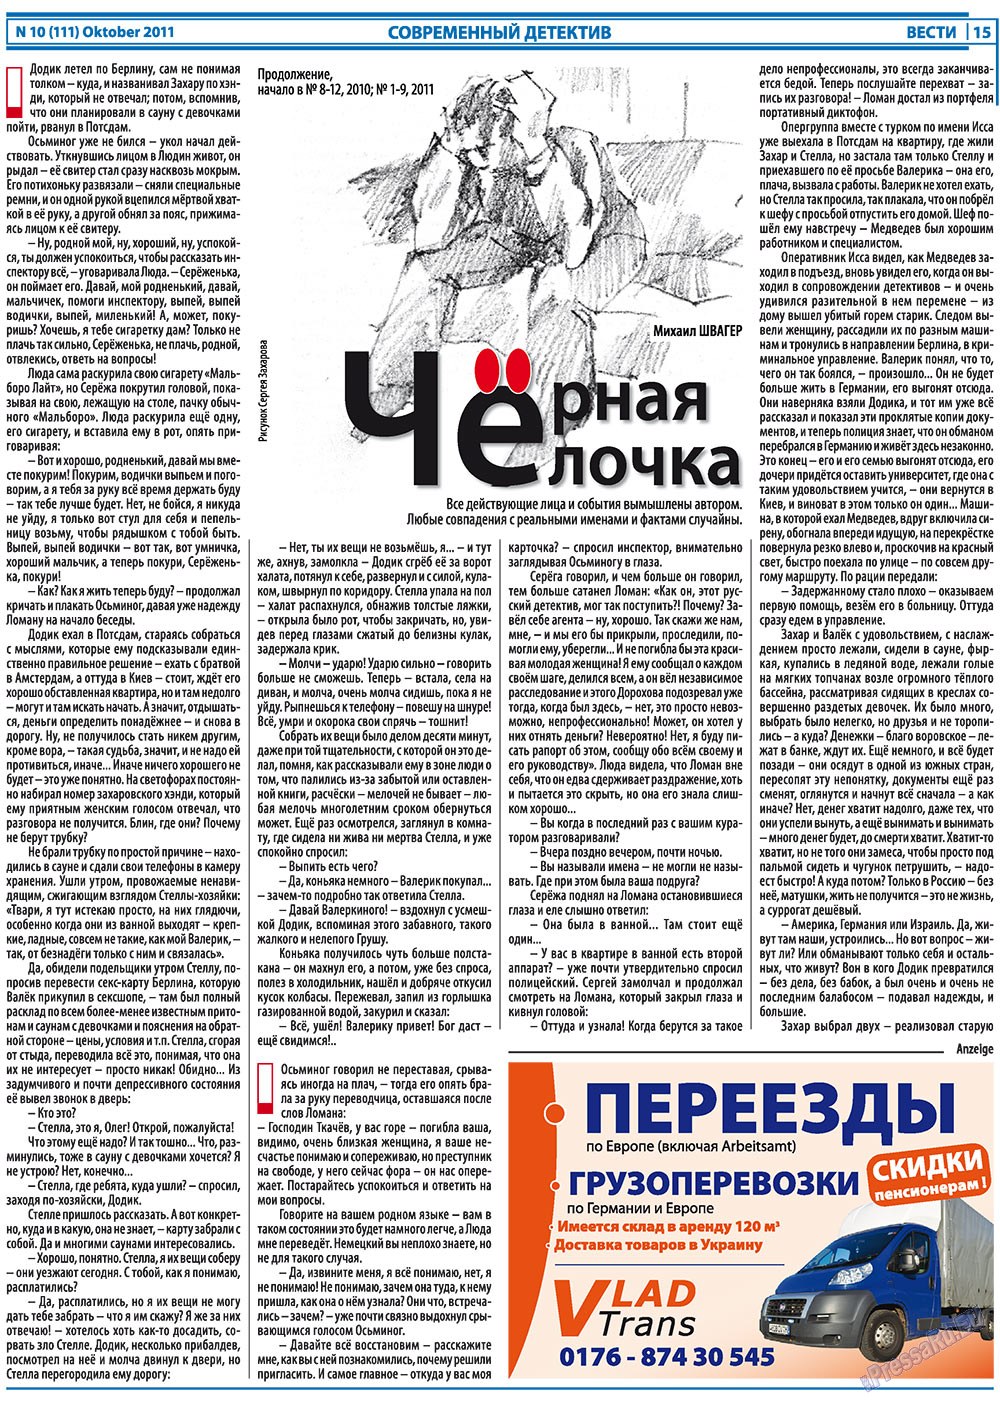 Вести, газета. 2011 №10 стр.15